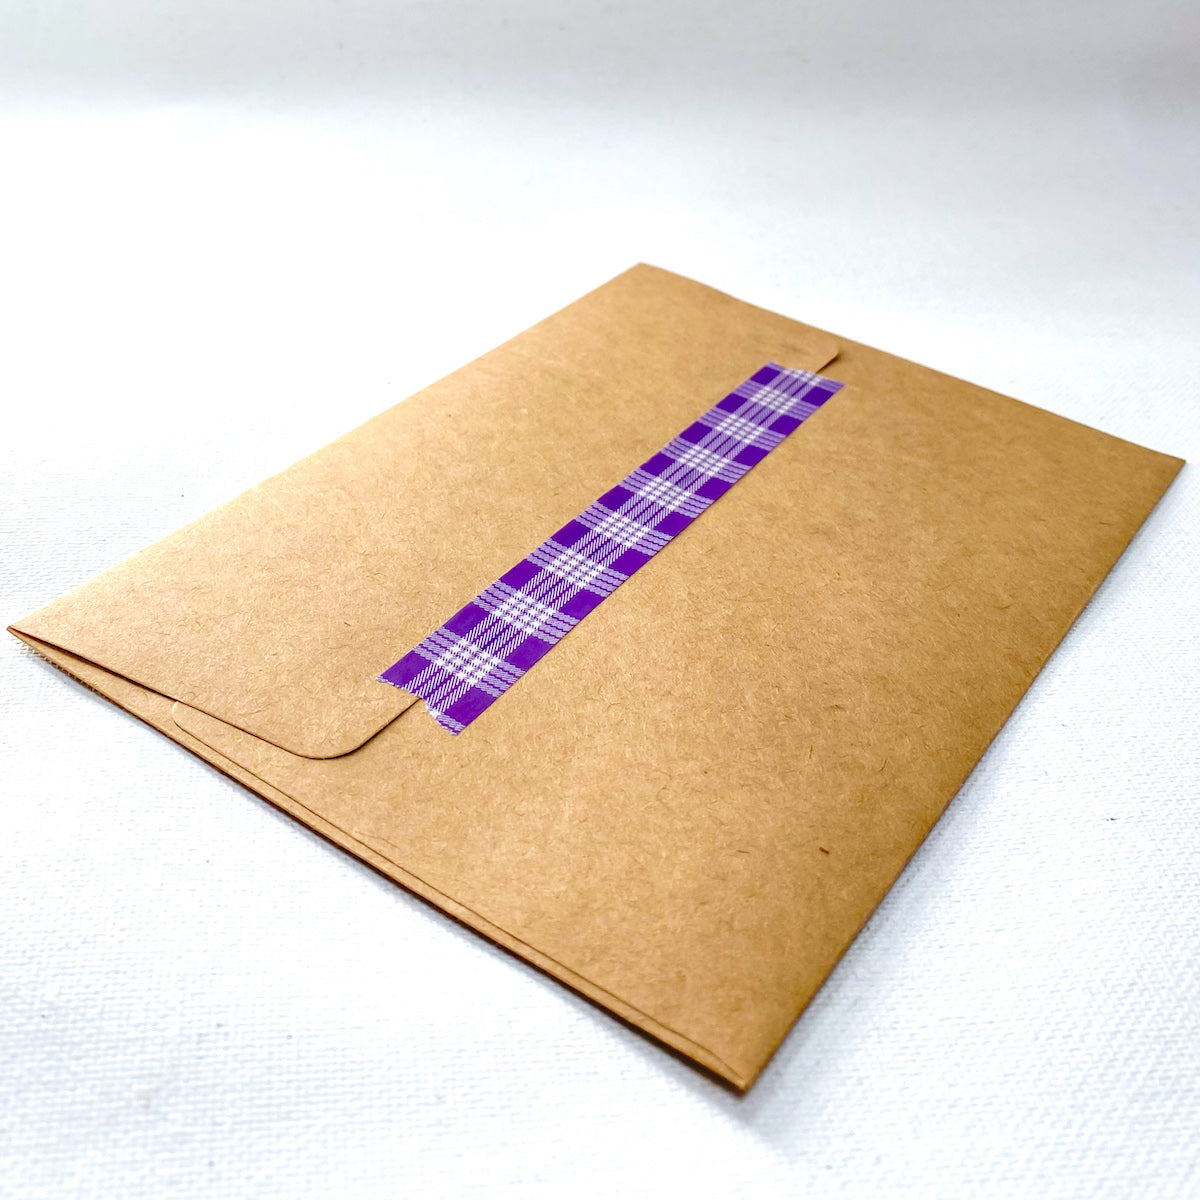 15mm x 10m Washi Tape - Palaka Purple